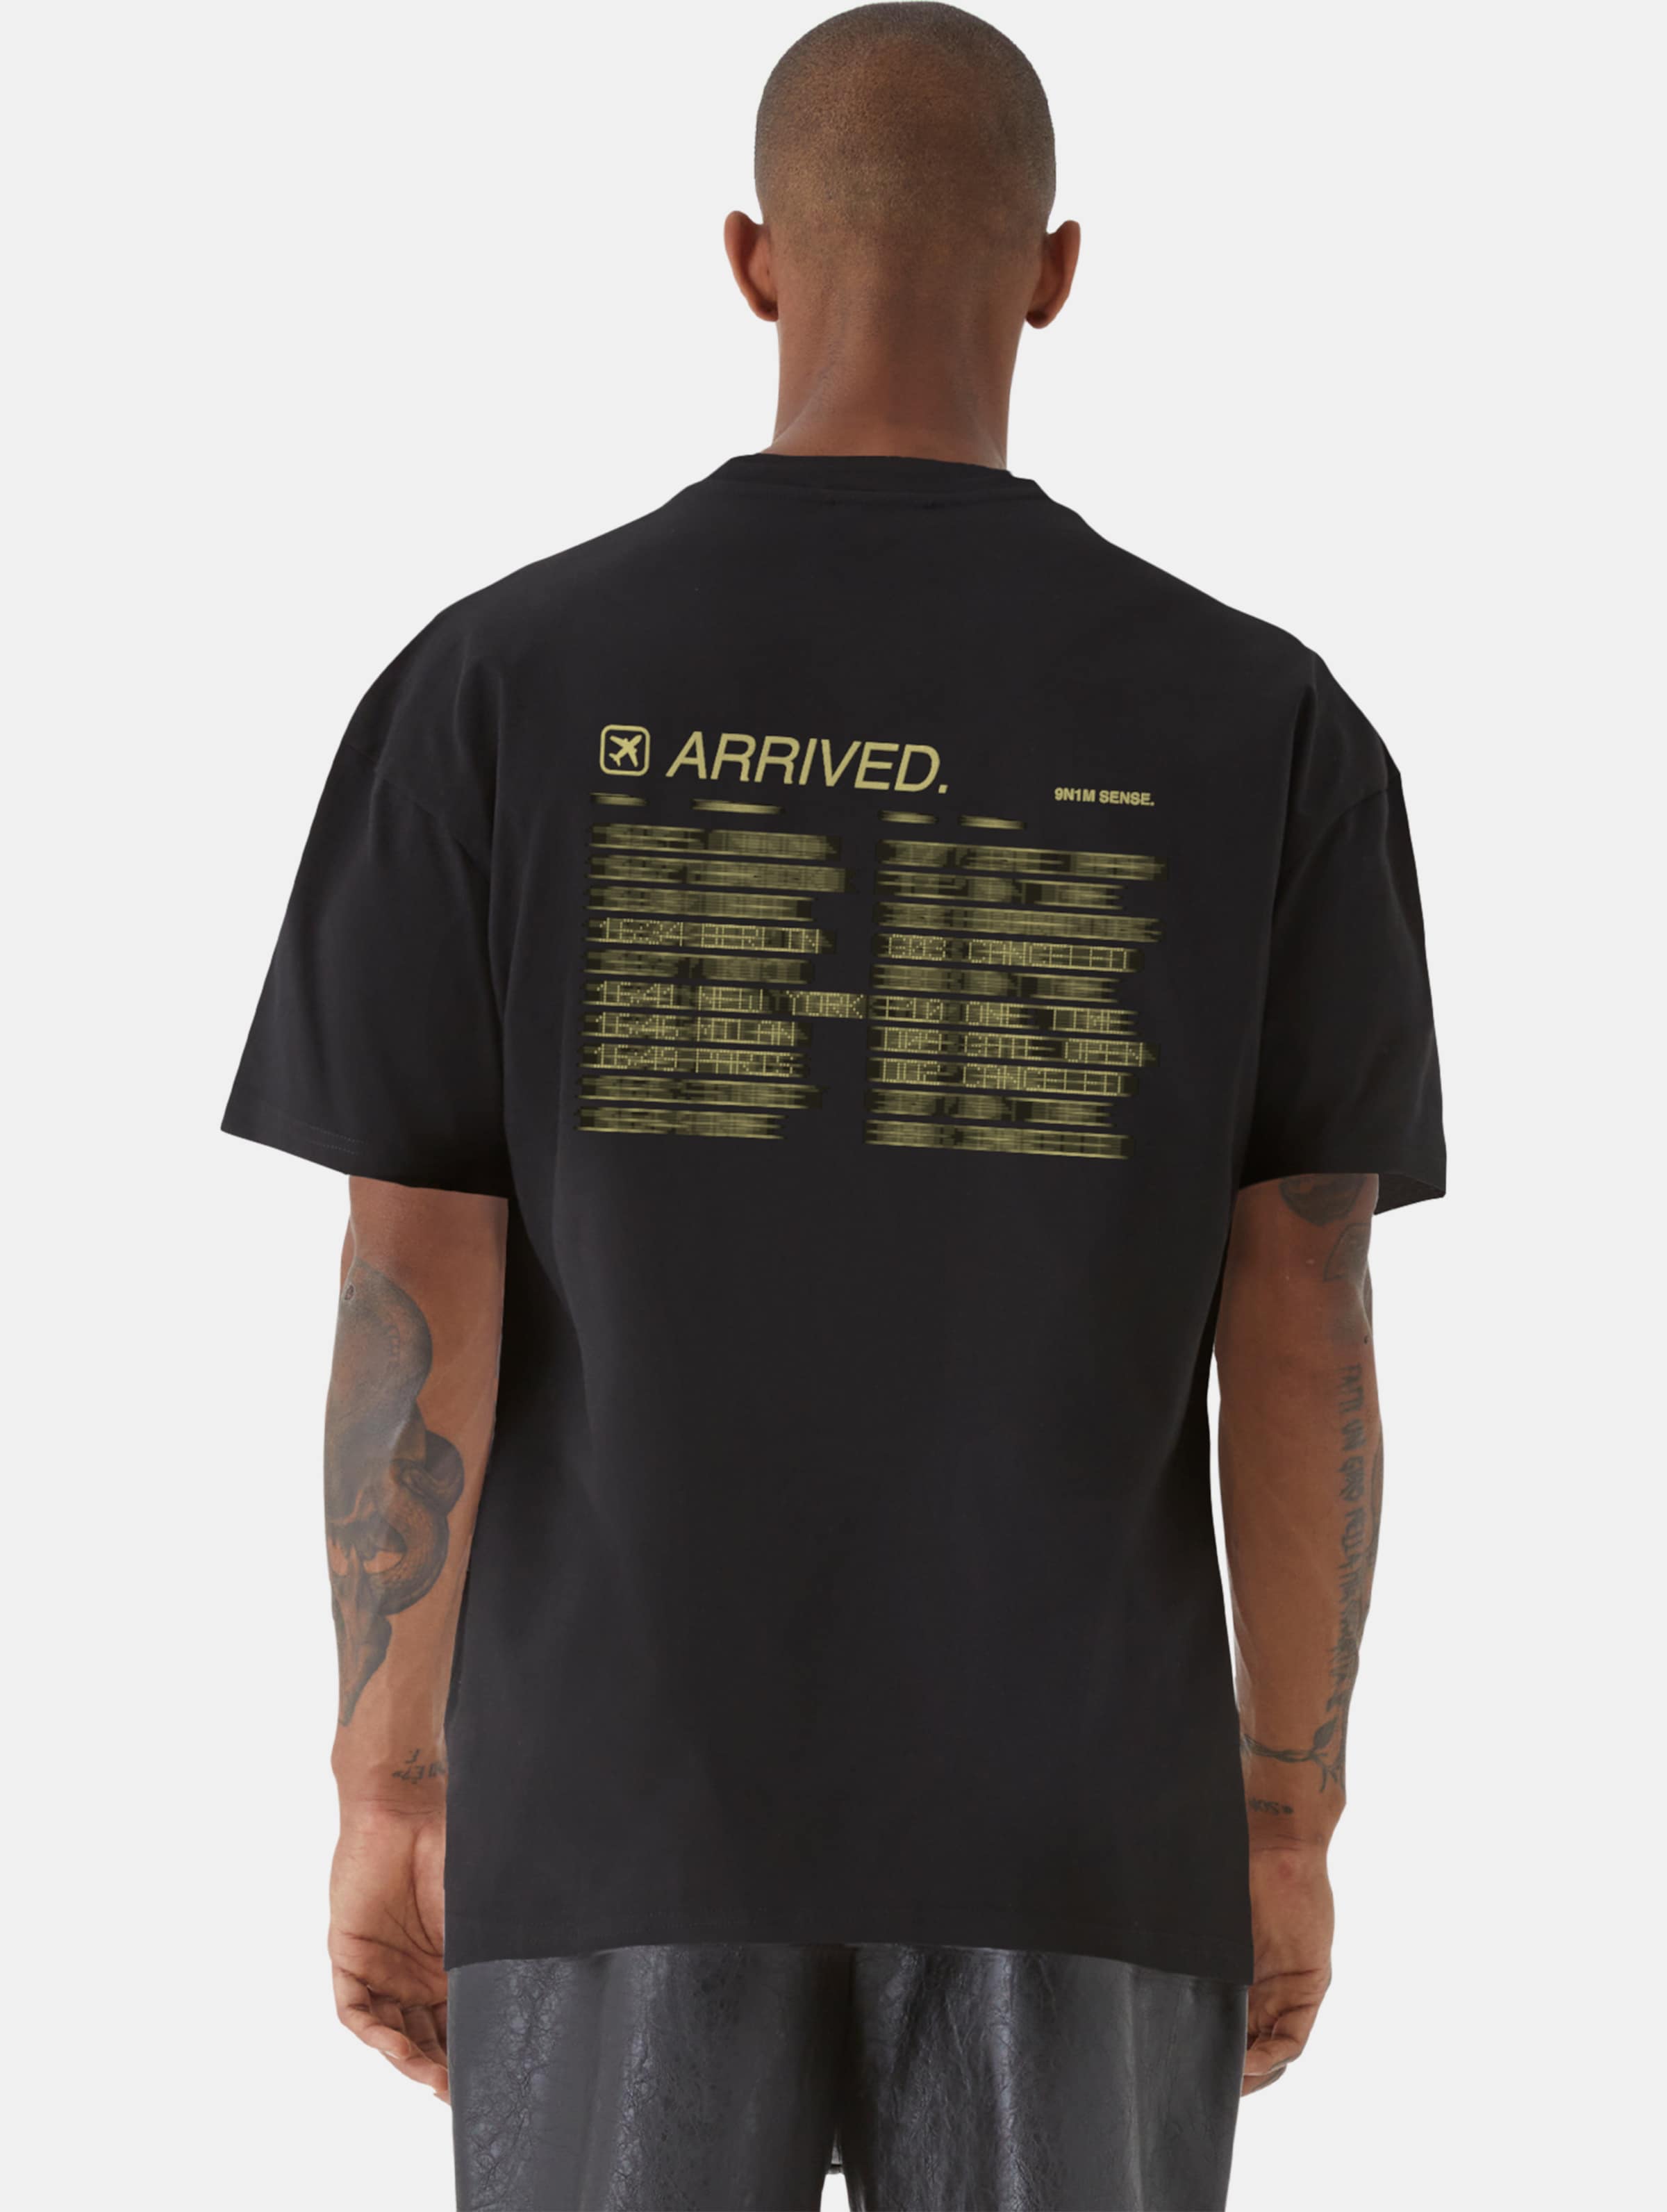 9N1M SENSE ARRIVED T-Shirt Männer,Unisex op kleur zwart, Maat L